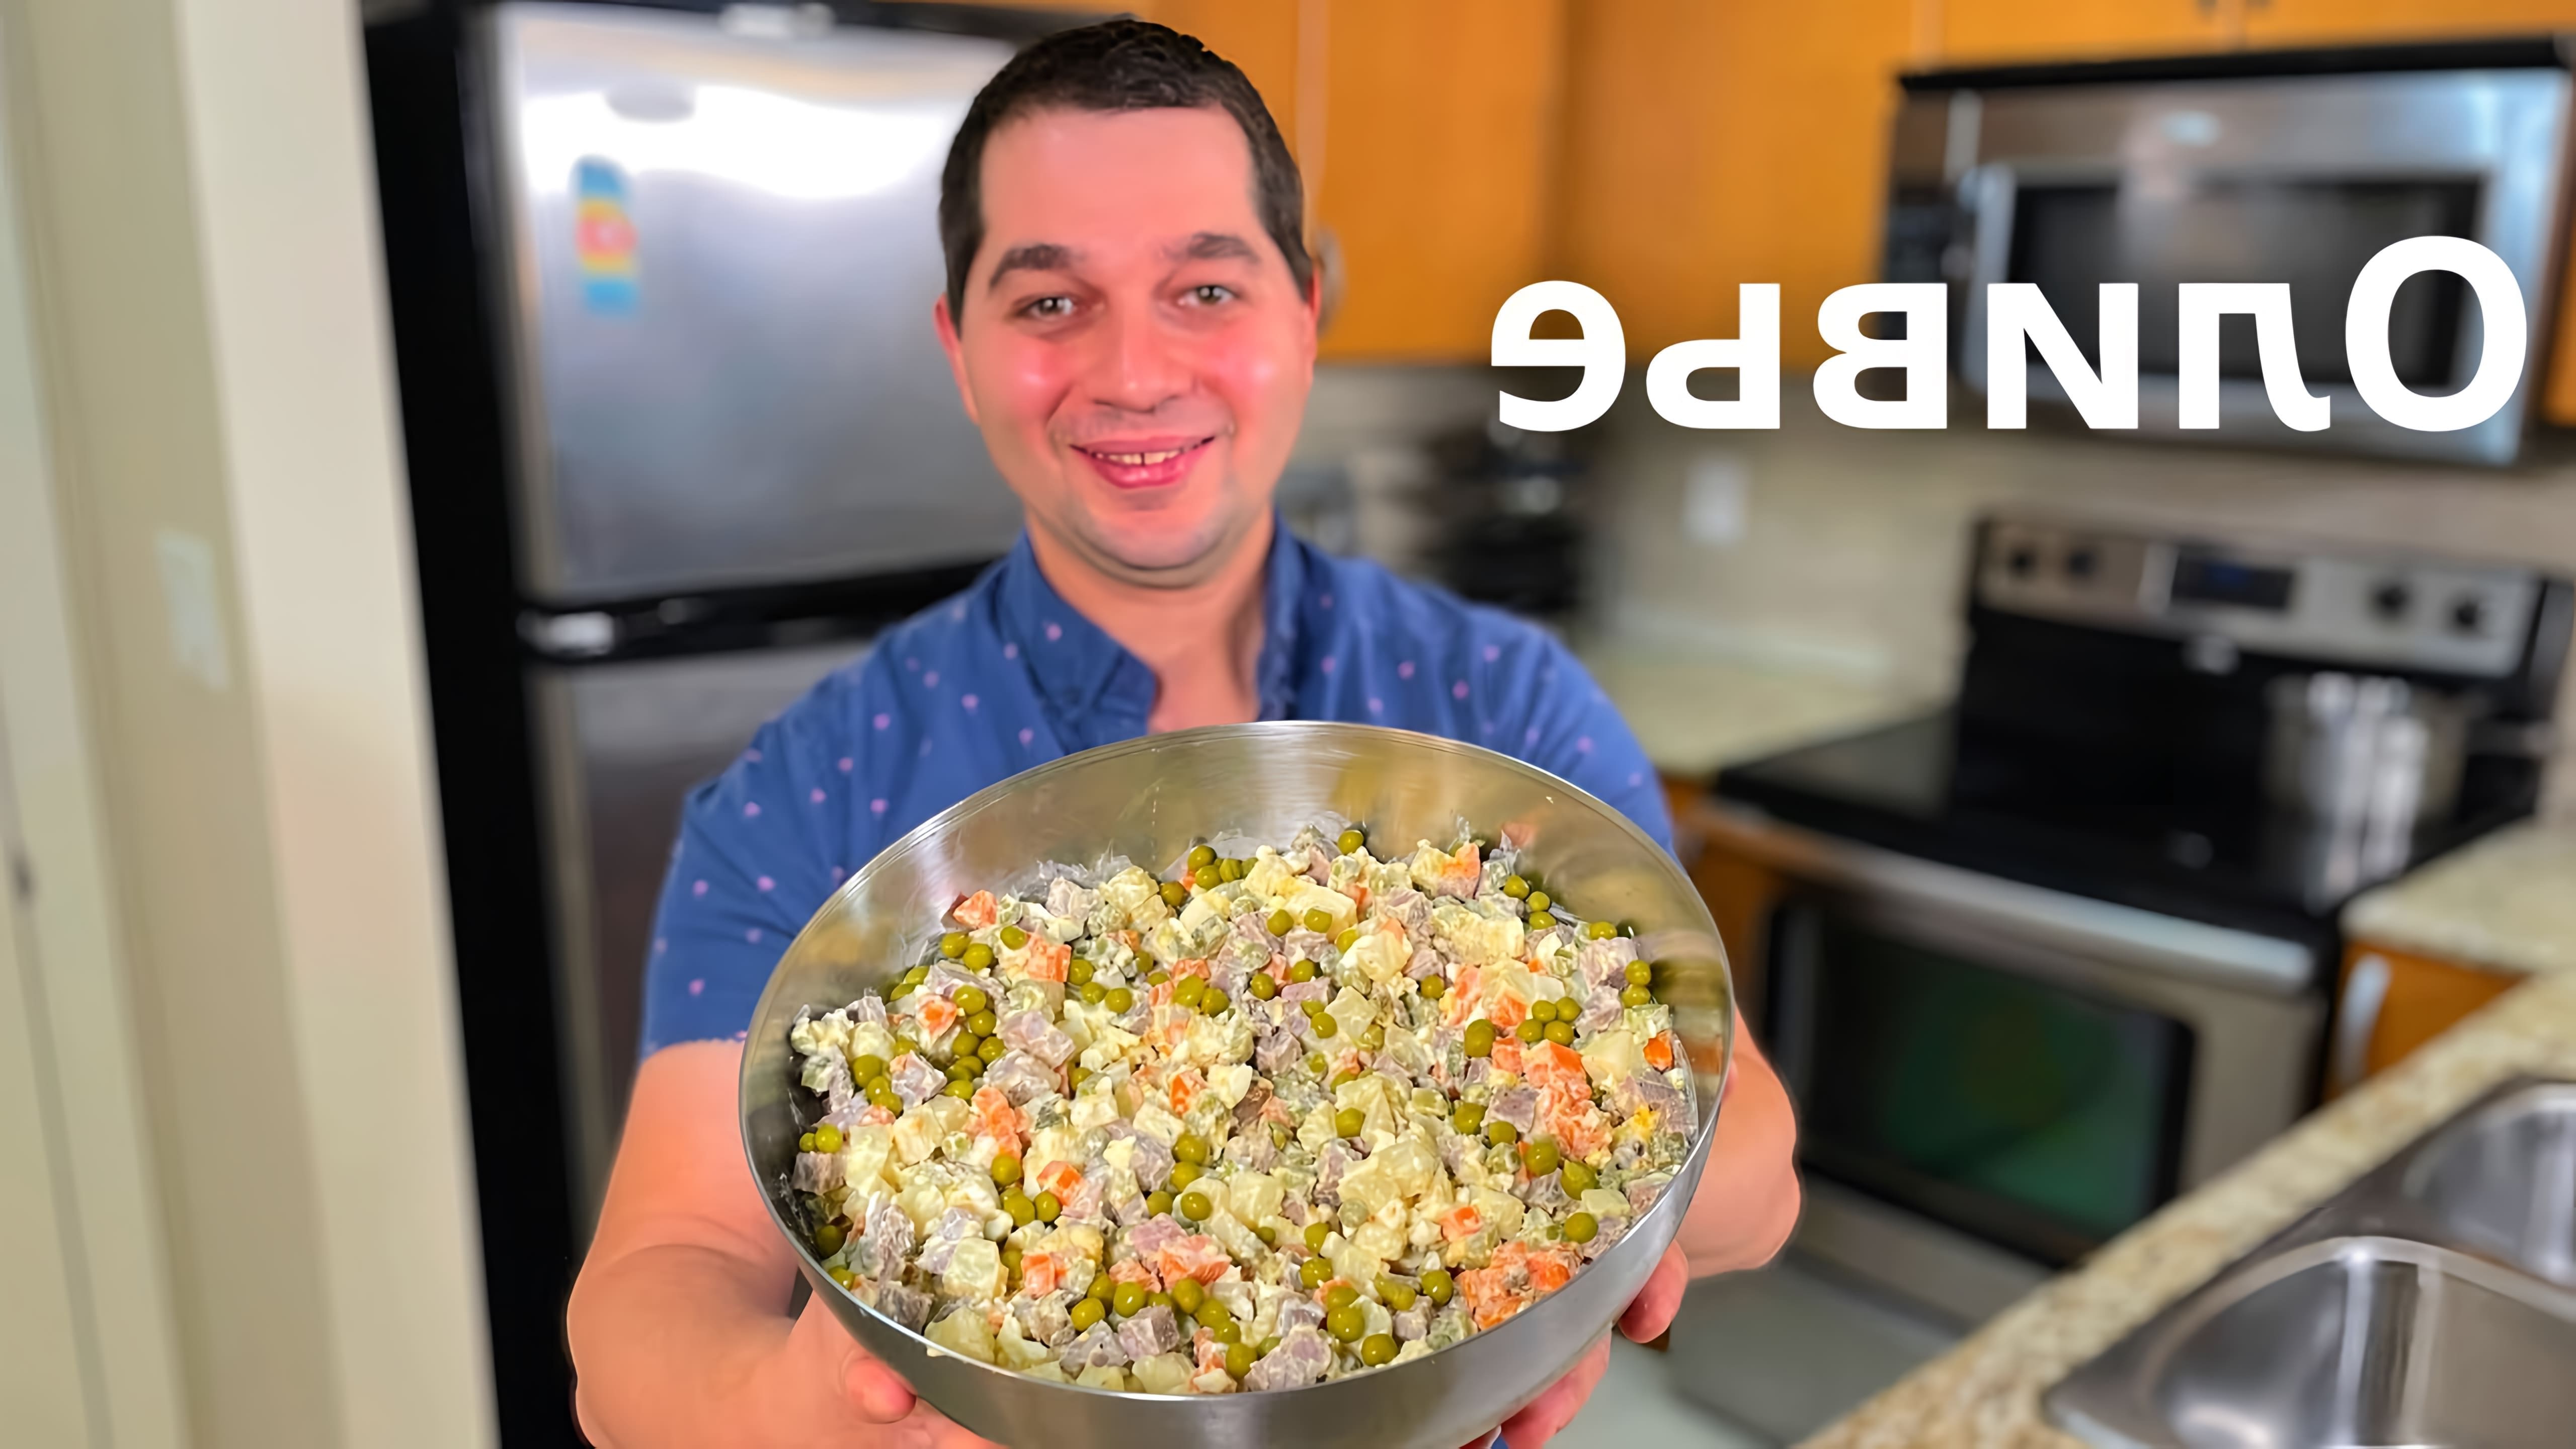 В этом видео демонстрируется рецепт приготовления салата "Оливье" как в ресторане